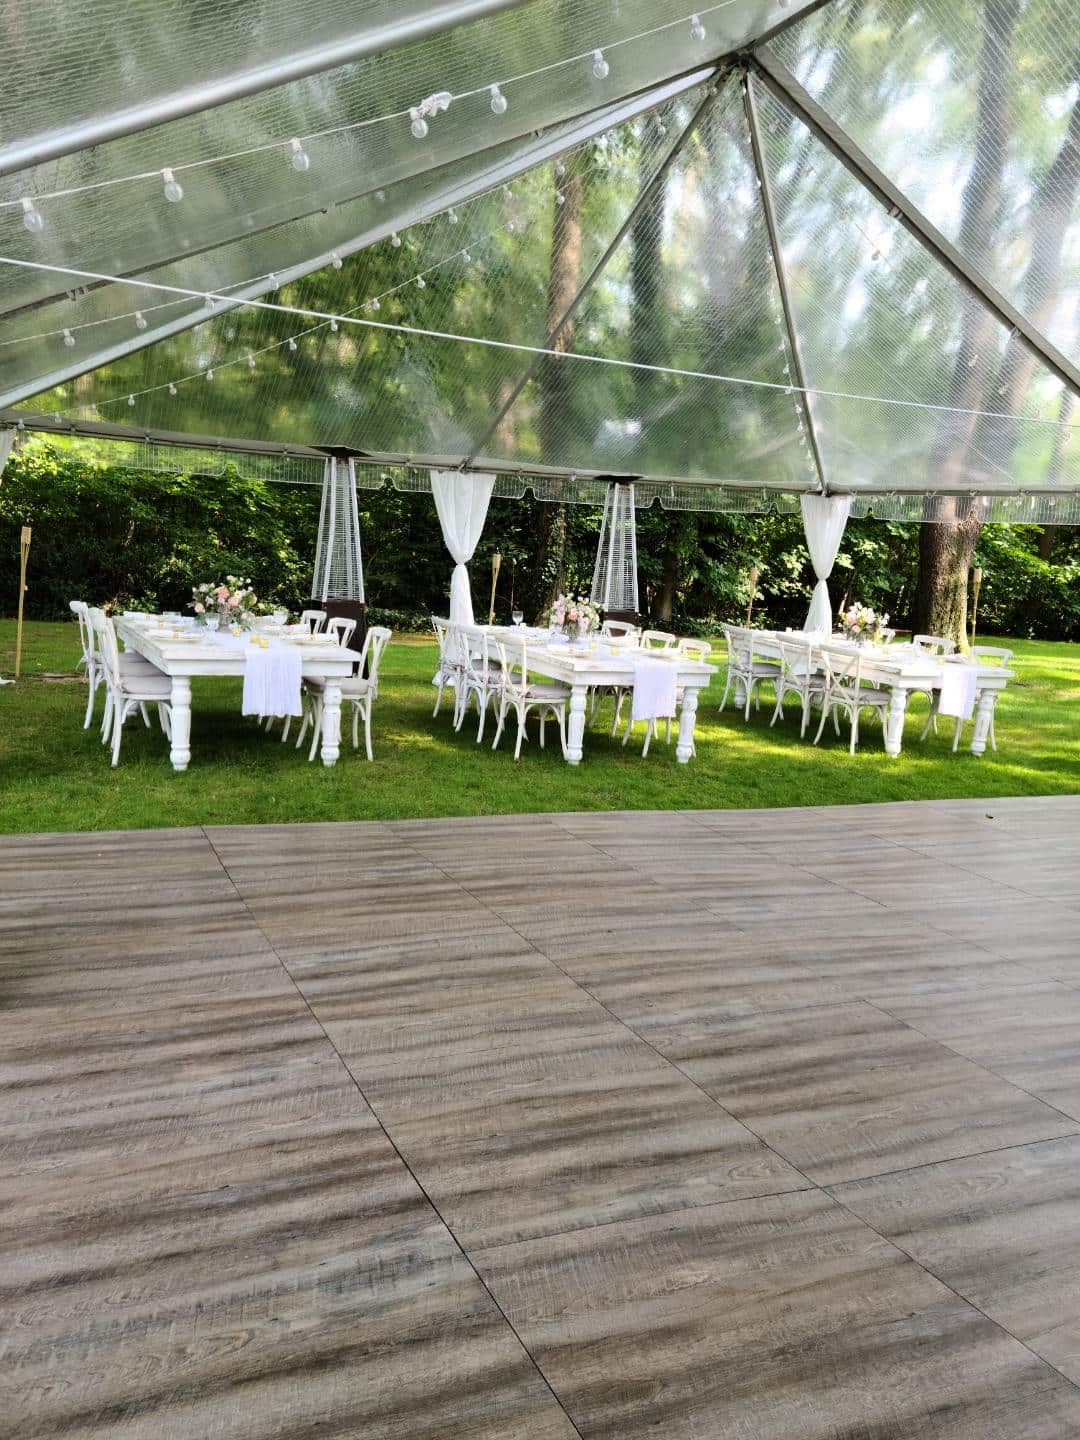 A wedding reception set up under a tent